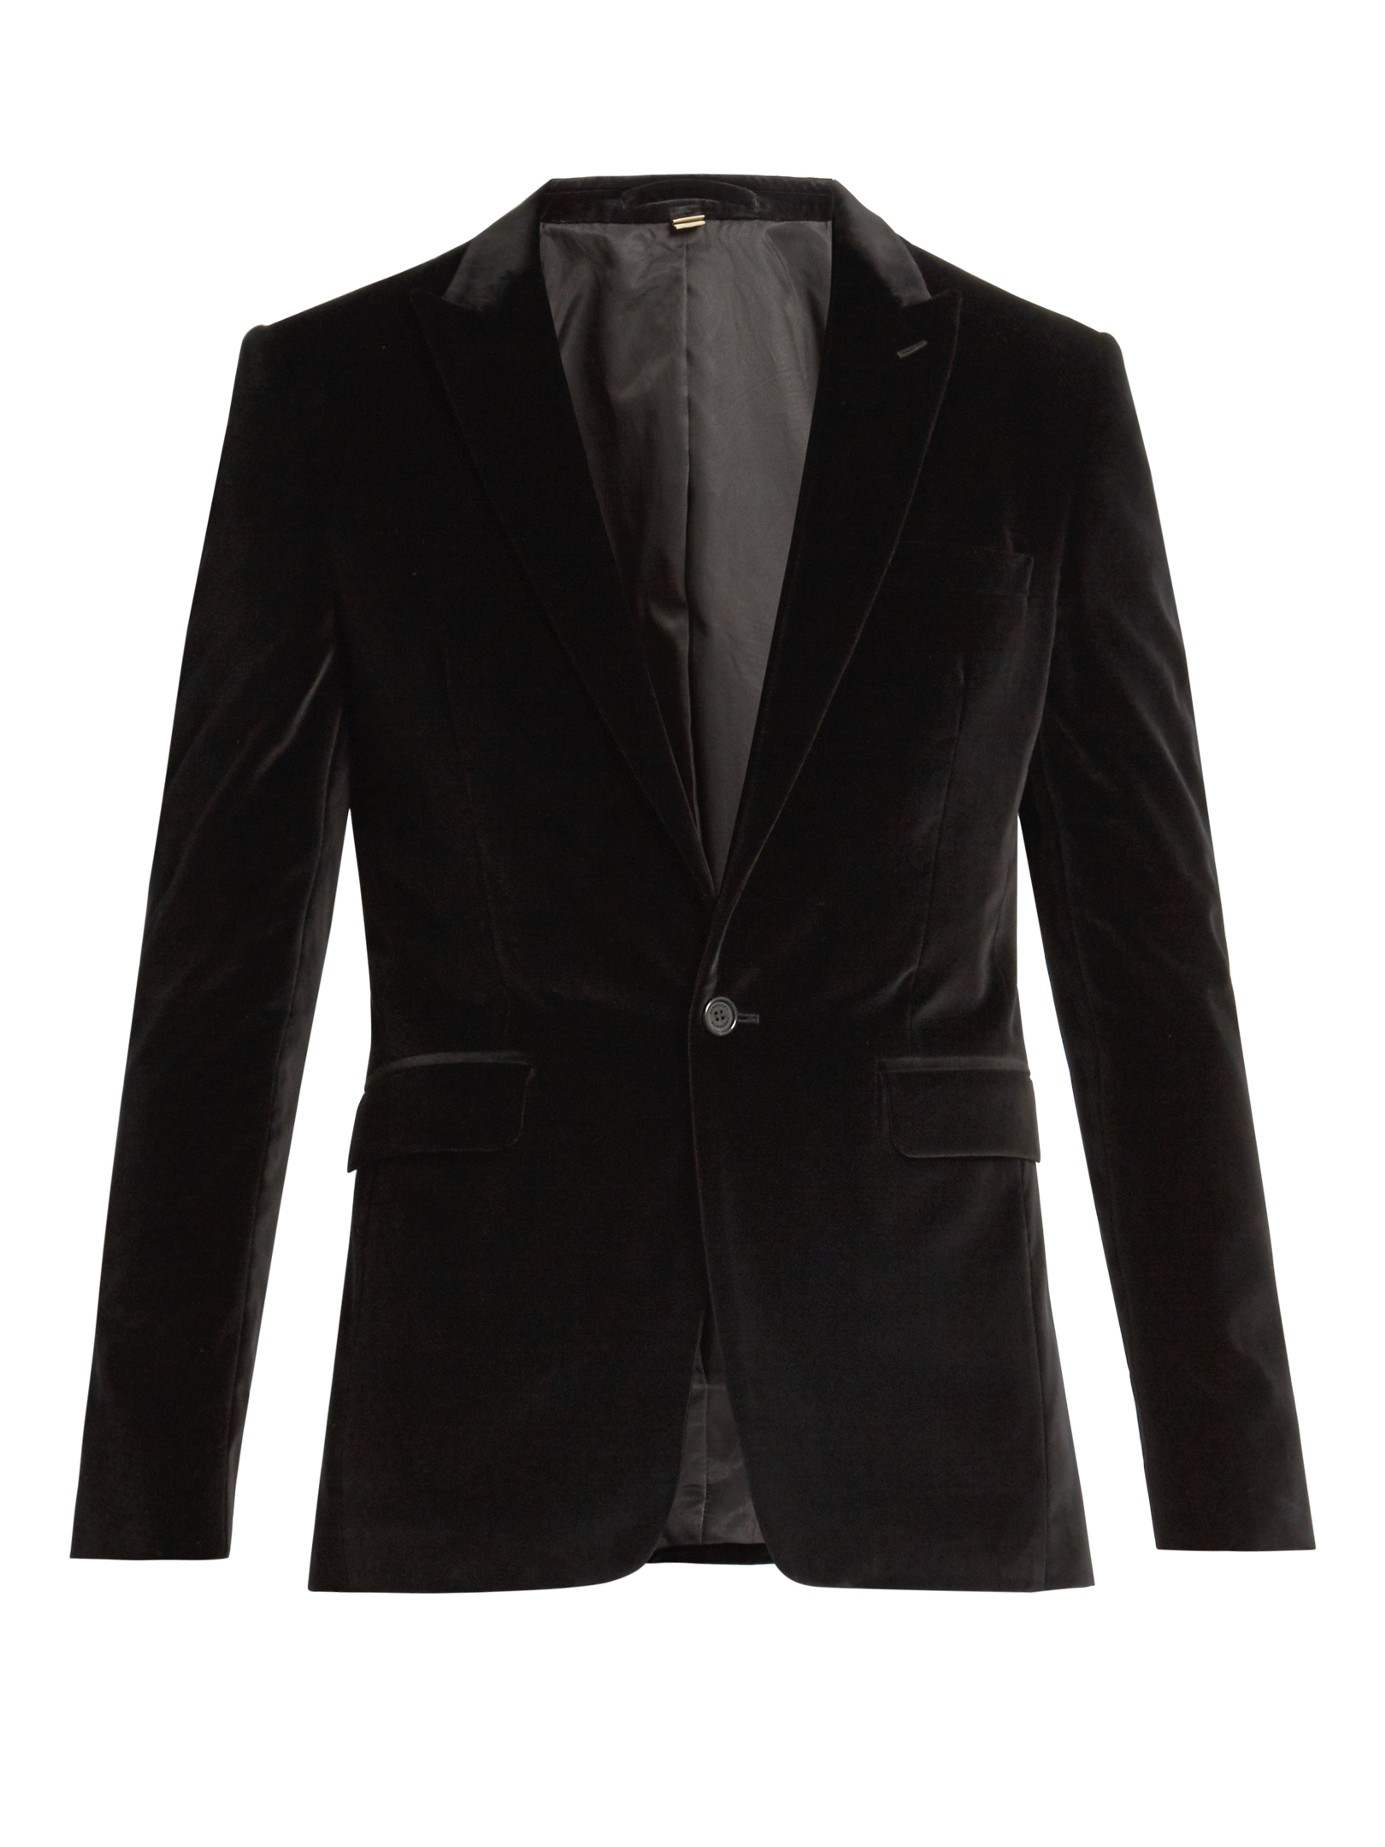 Lyst - Burberry Tailored Velvet Dinner Jacket in Black for Men